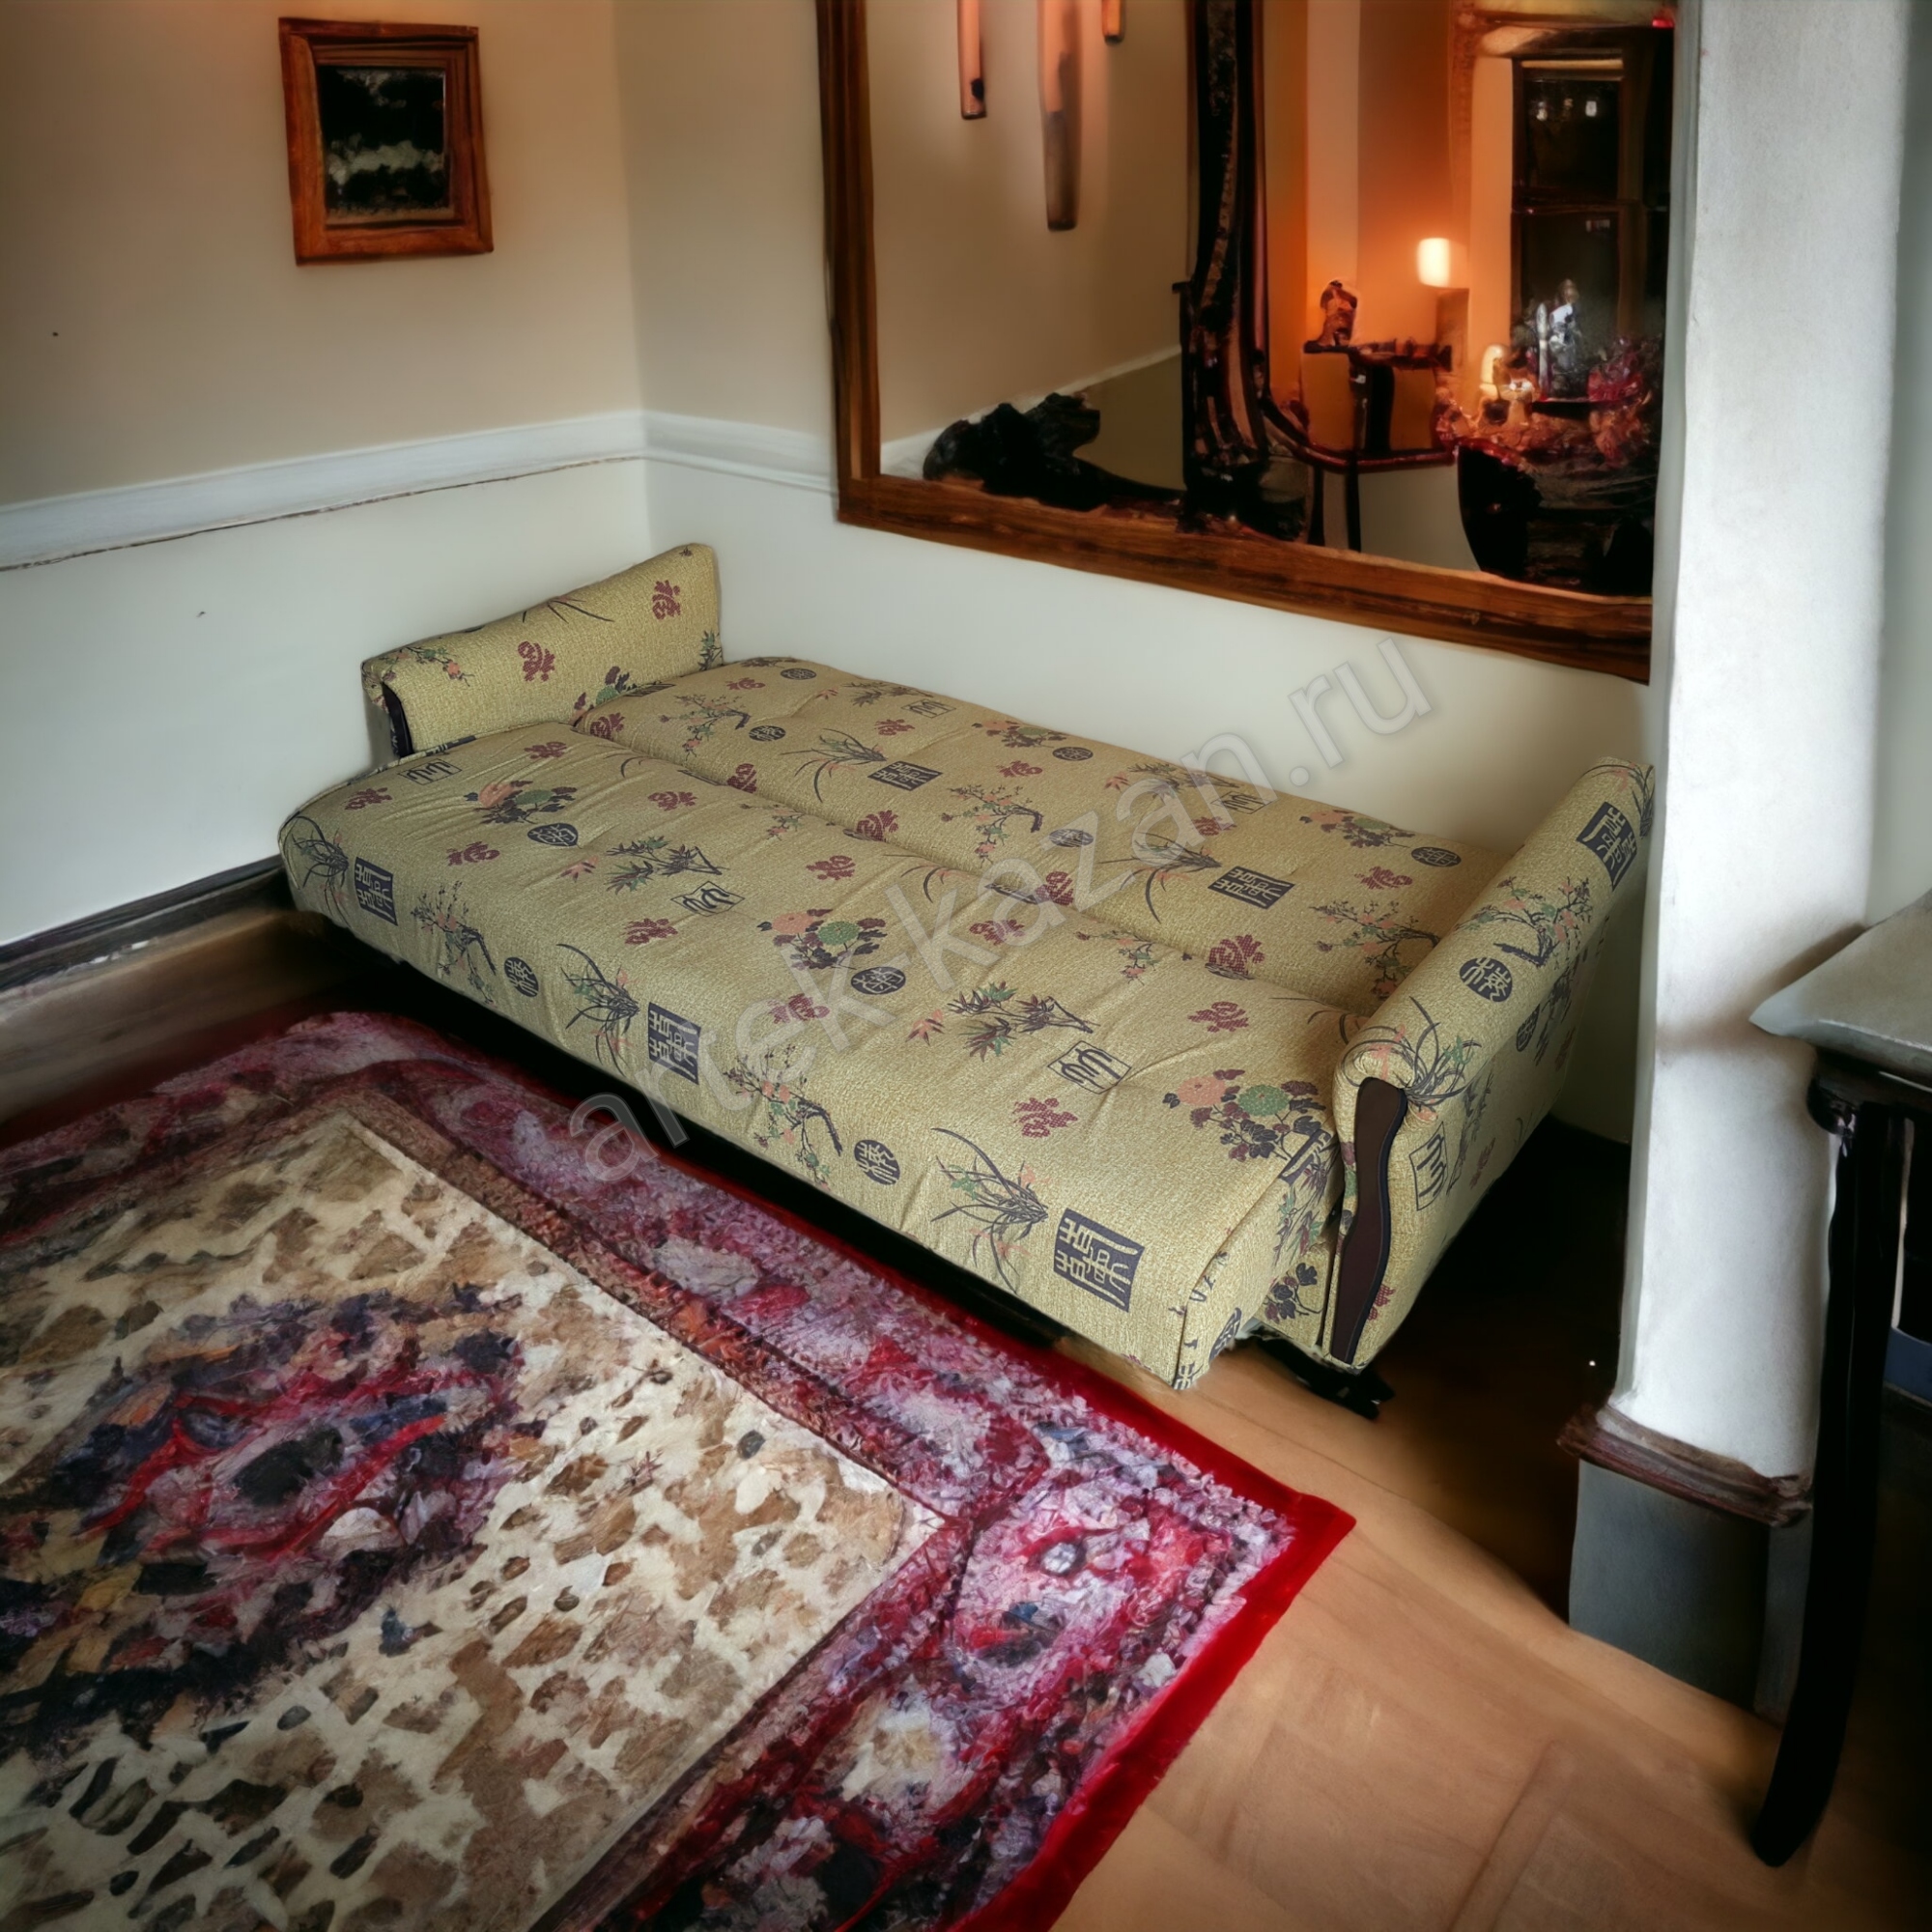 Фото спального места. Купить недорогой диван по низкой цене от производителя можно у нас.